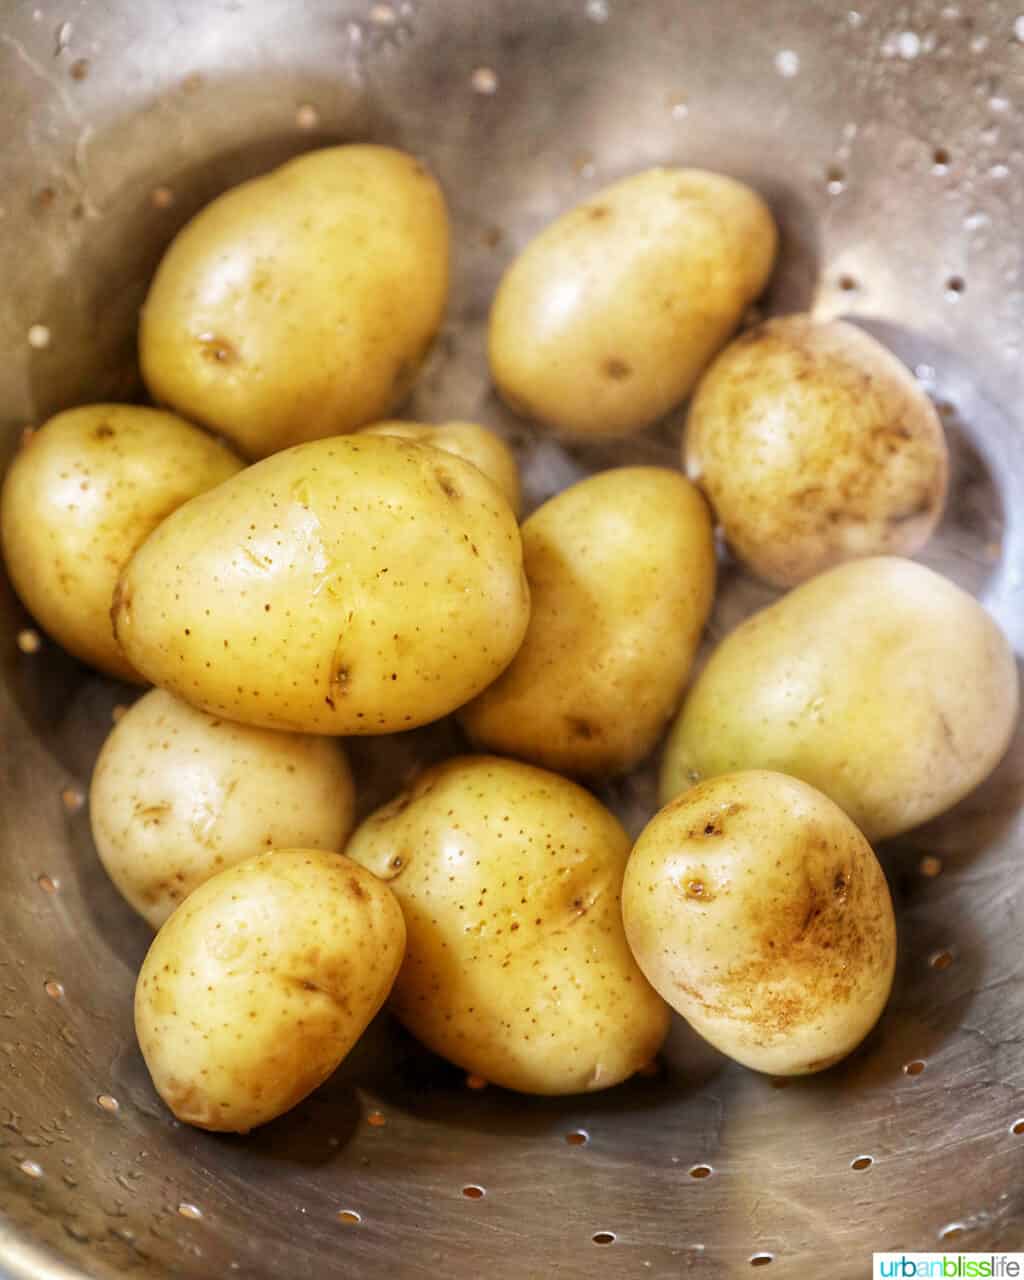 baby potatoes to make a potato salad recipe